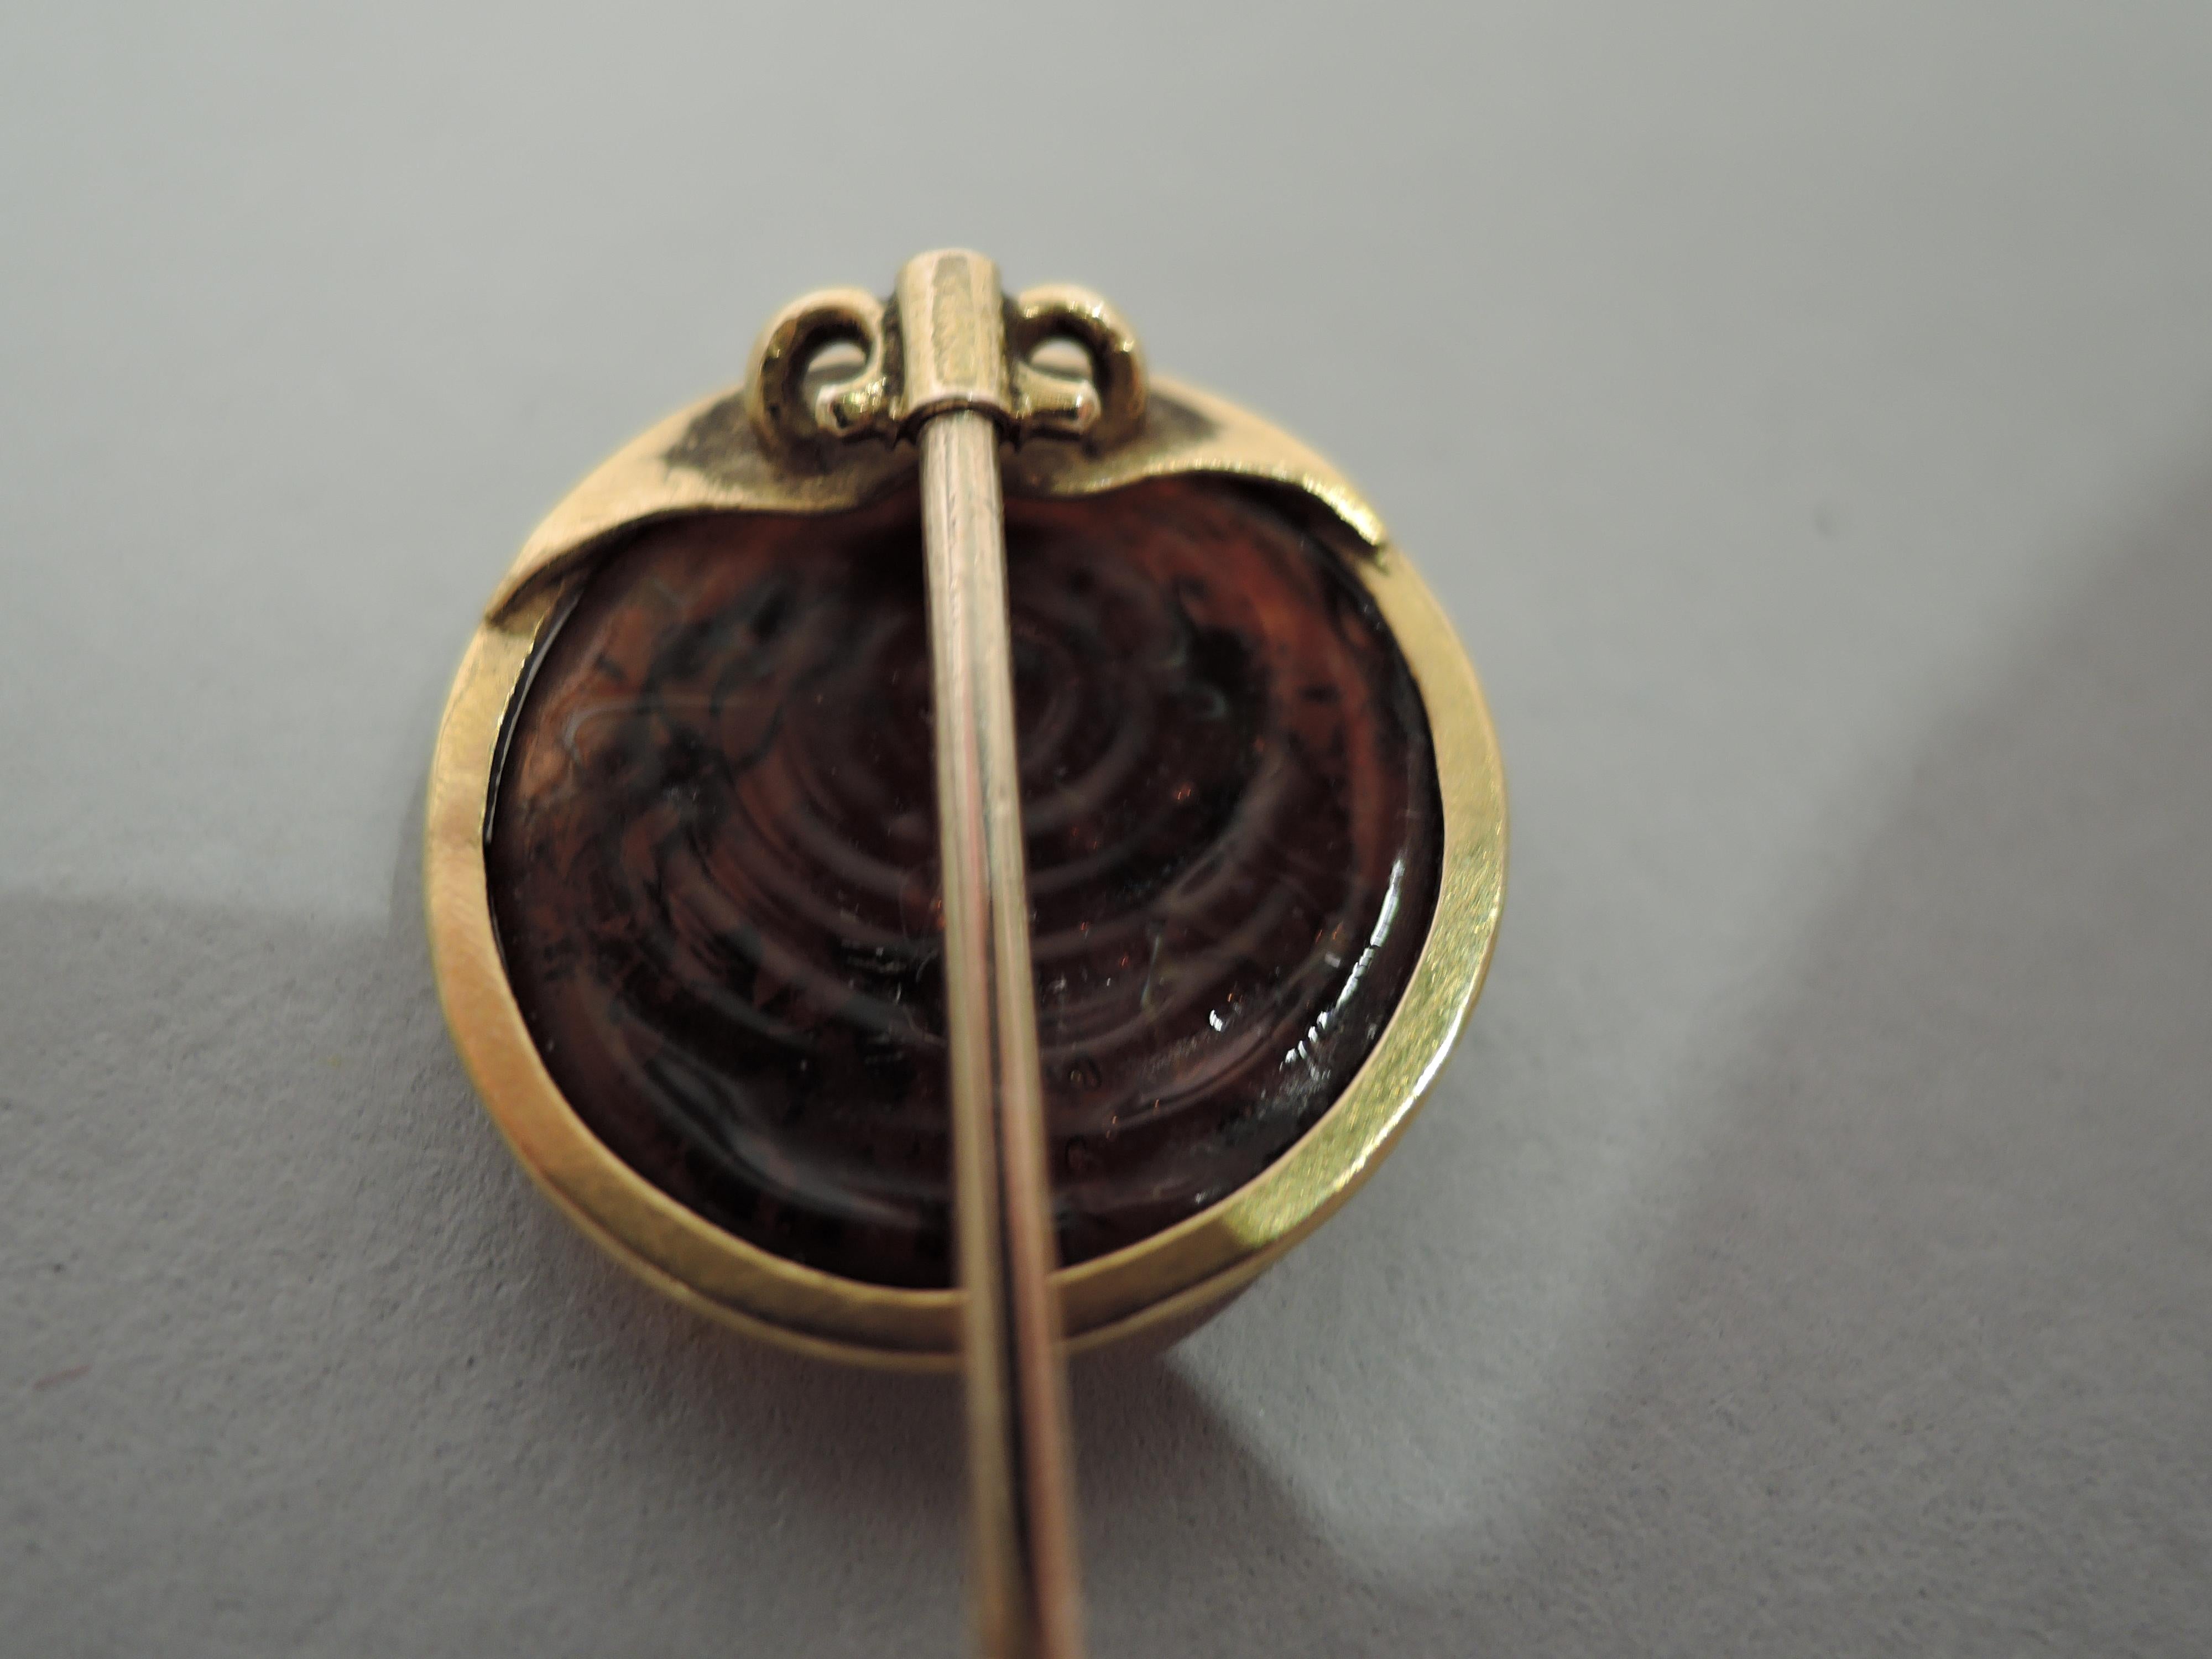 Europäische Anstecknadel aus 15-karätigem Gold mit geschnitzter Intaglio-Kamee, die einen nach links gerichteten klassischen Frauenkopf darstellt. Die Farbe ist rötlich-braun. Sie befindet sich in einem goldenen Rahmen, der an einem gedrehten Schaft